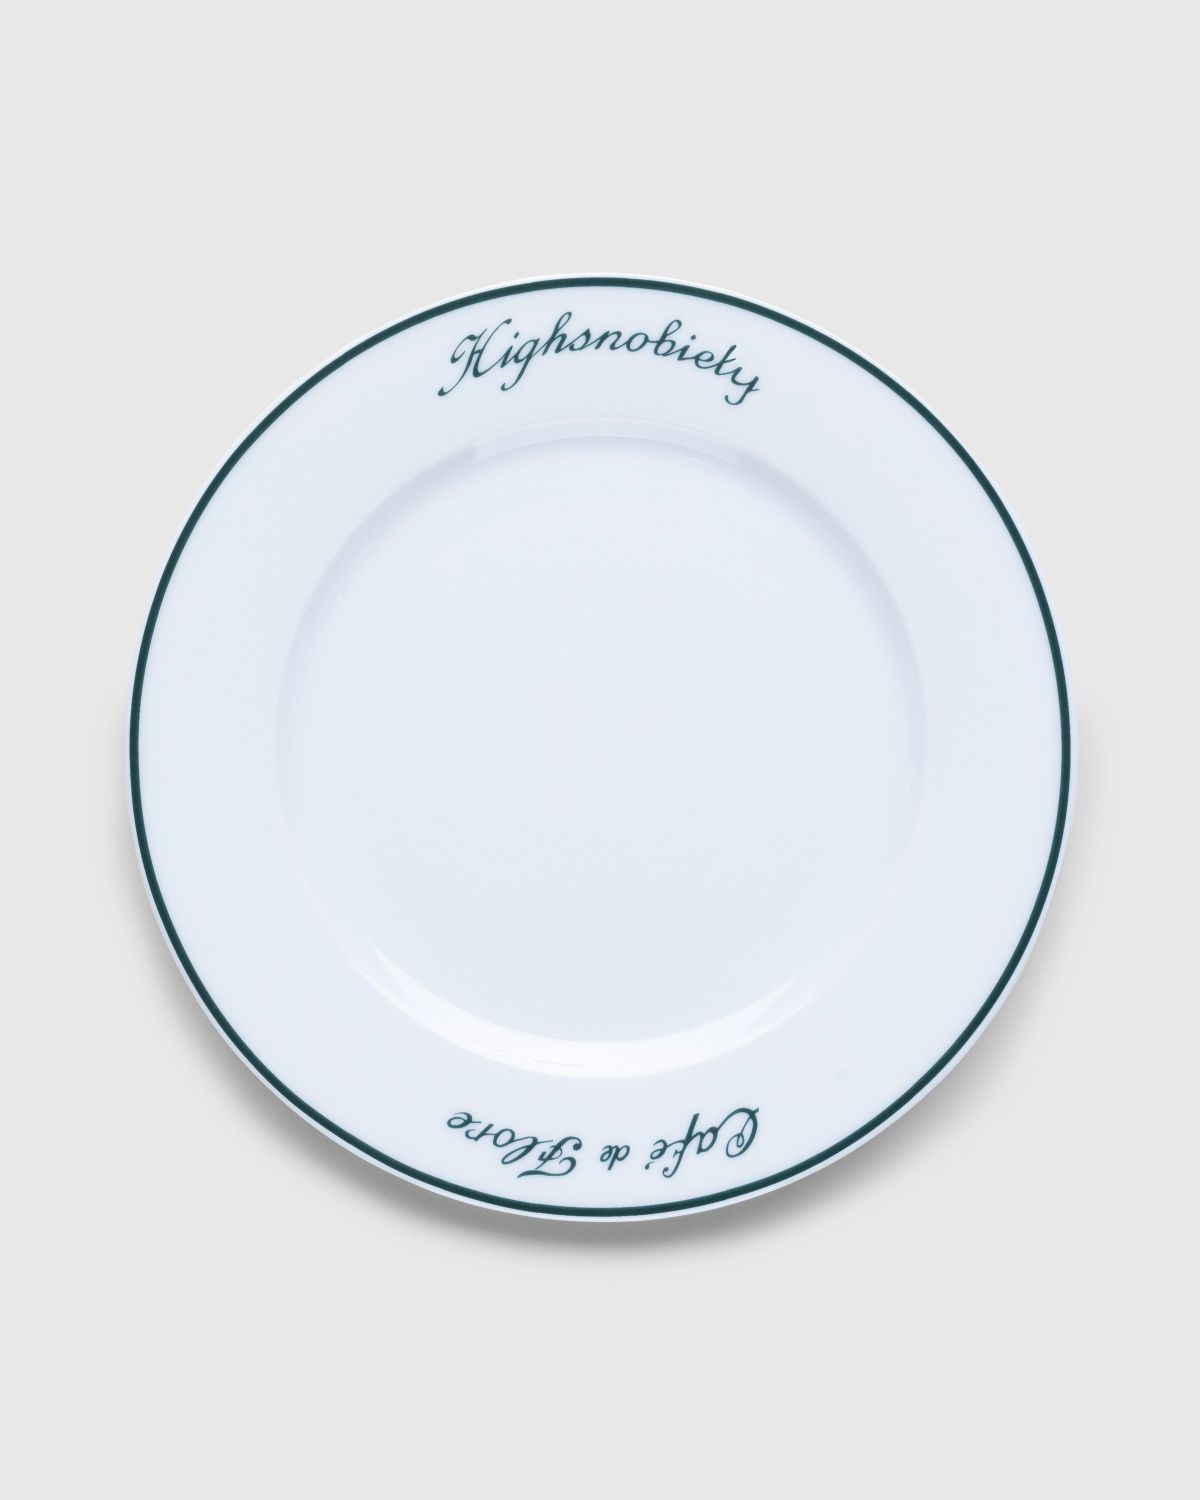 Café de Flore x Highsnobiety – Plate - Ceramics - White - Image 1